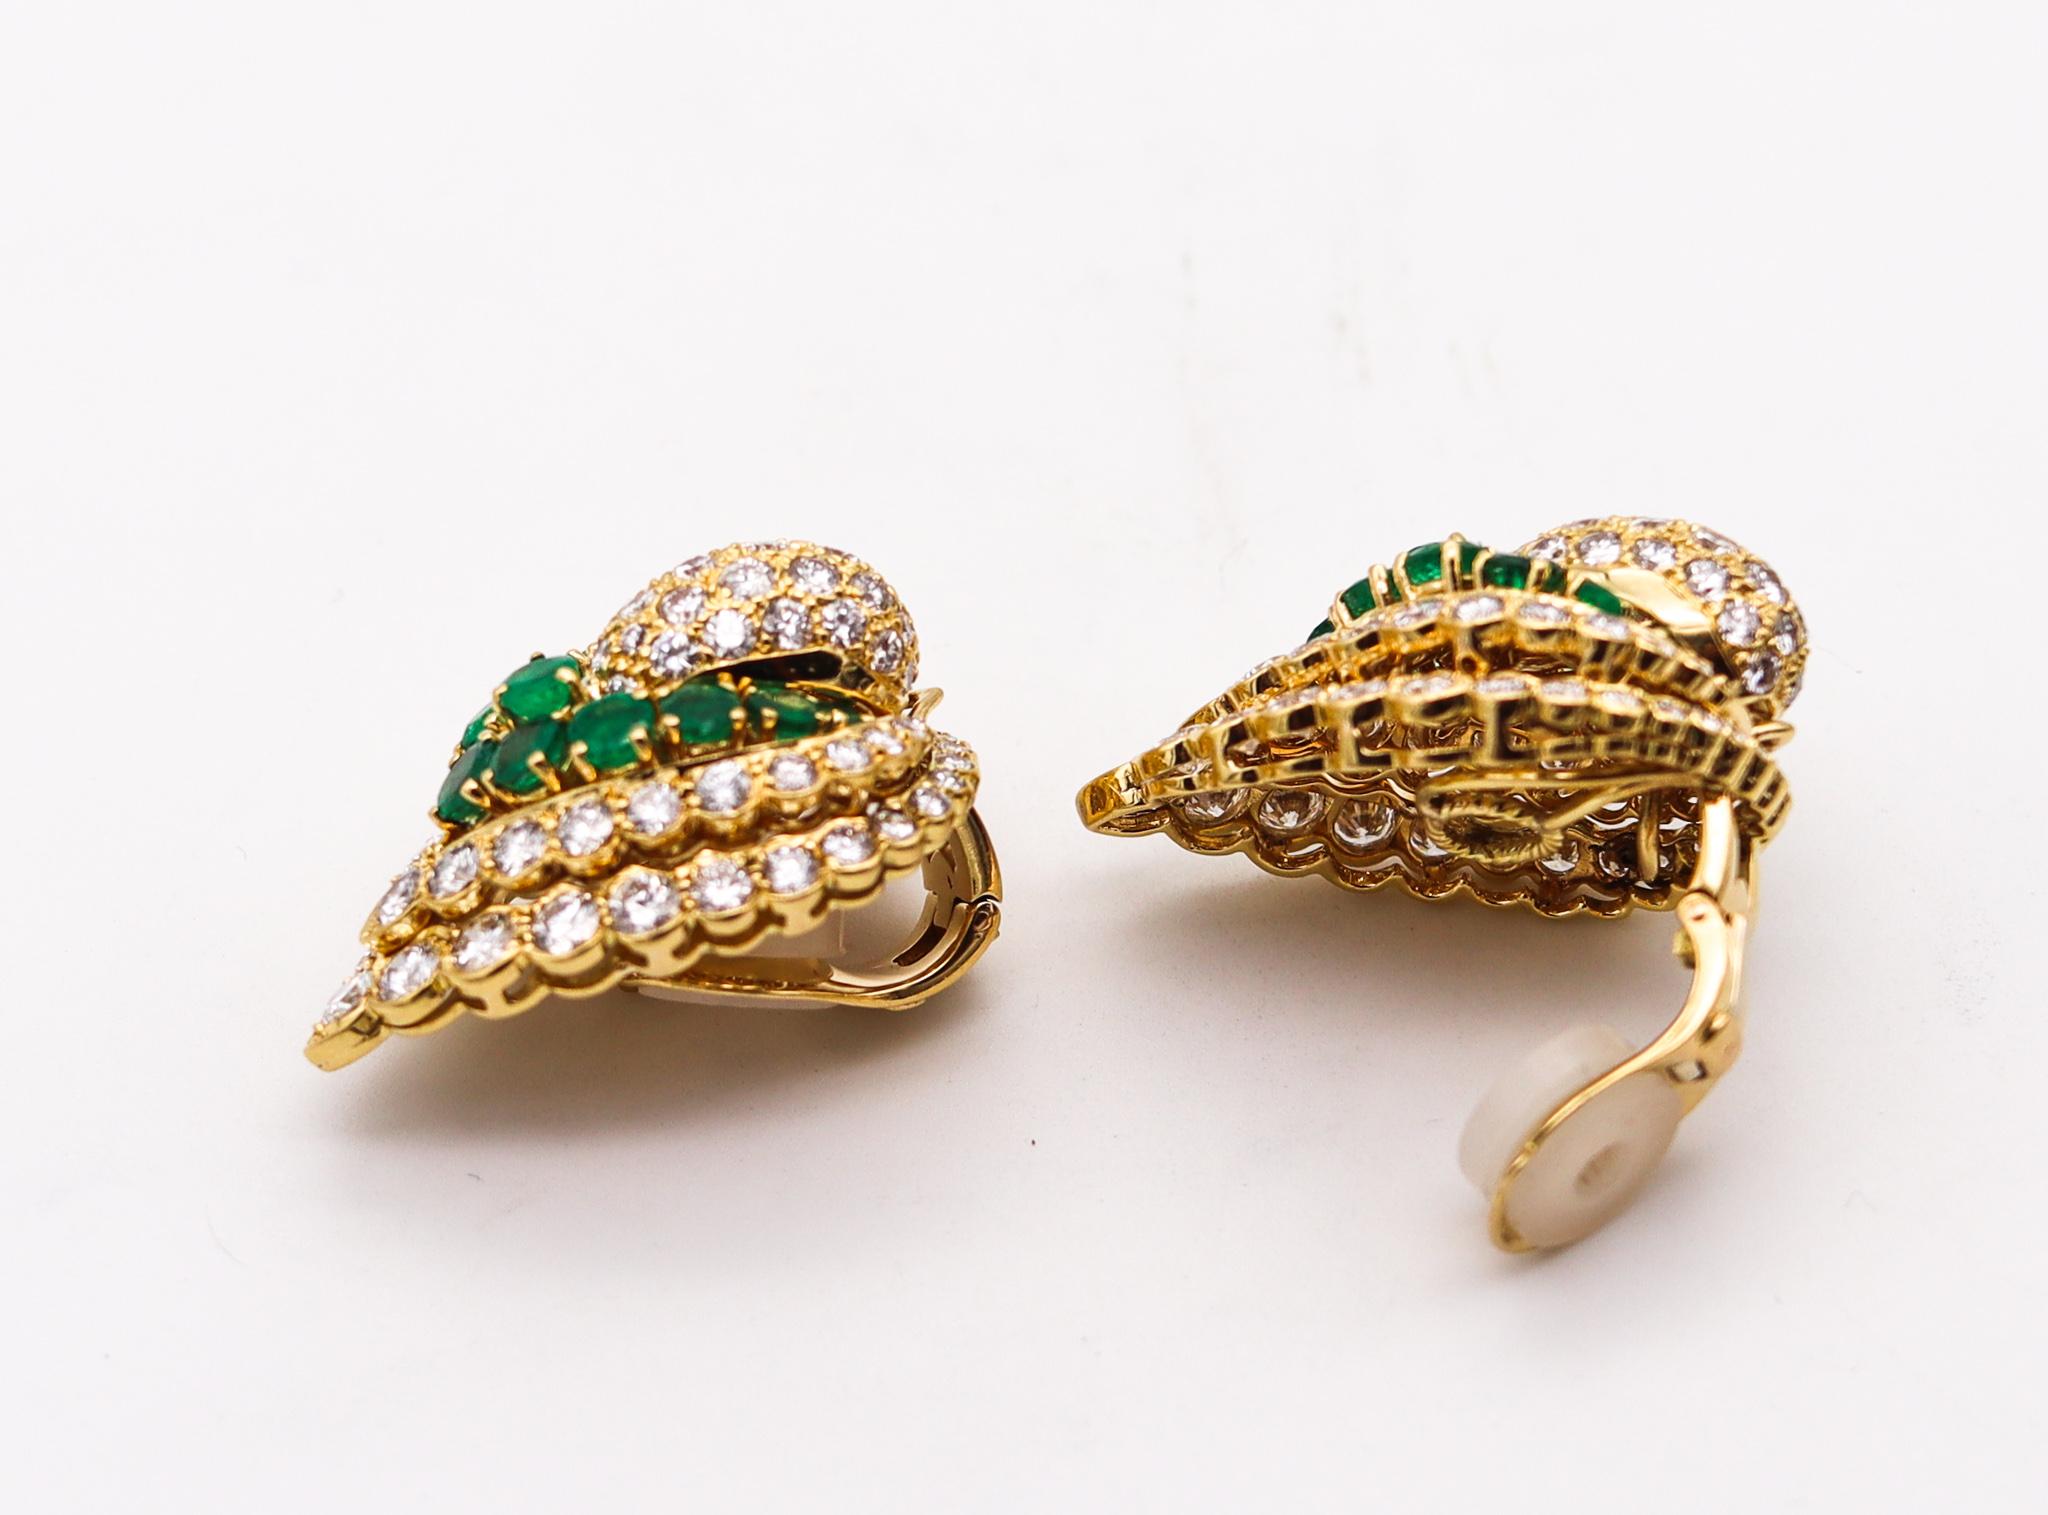 Modernist Andre Vassort 1970 Paris Gem Set Earrings 18Kt Gold 19.22 Ctw Diamond Emeralds For Sale